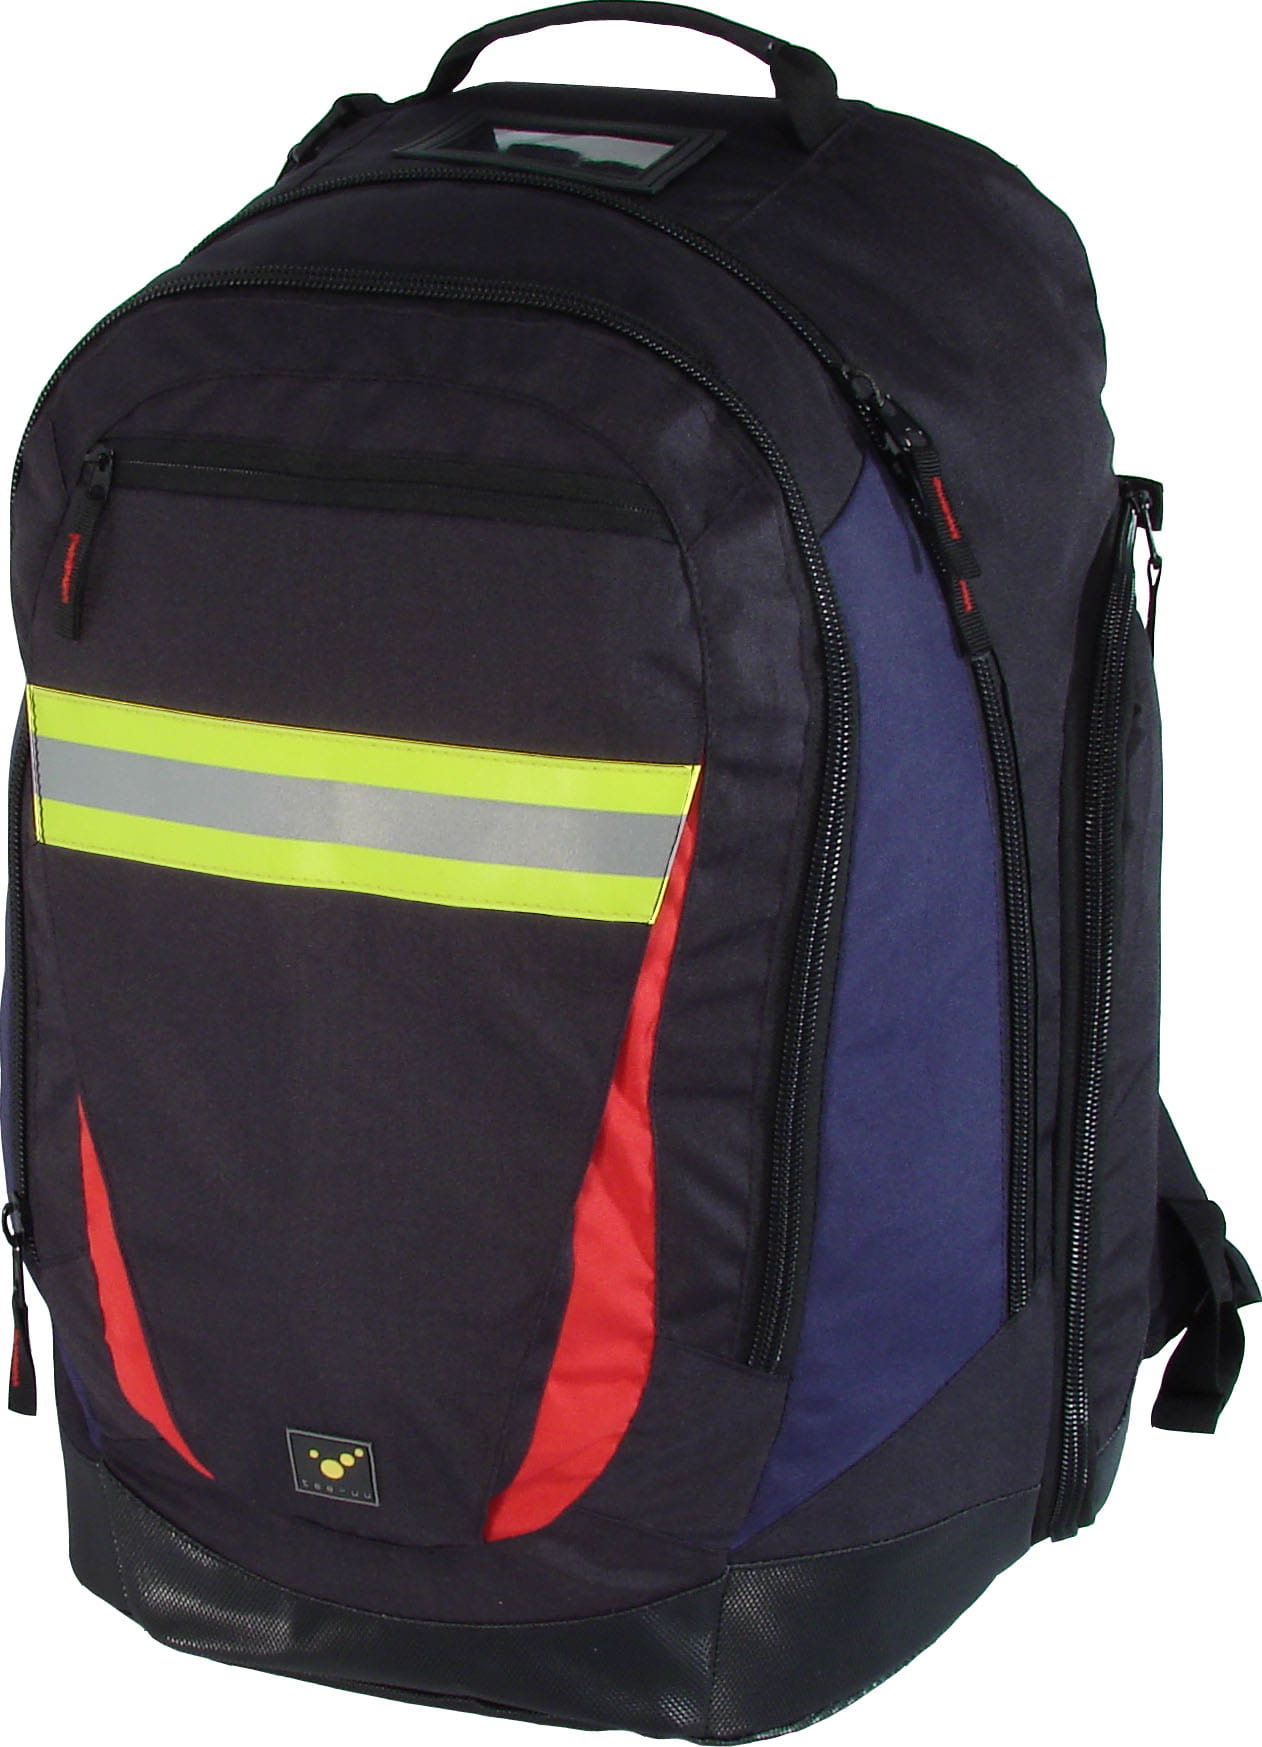 SHIFTBAG Rucksack für persönliche Ausrüstung